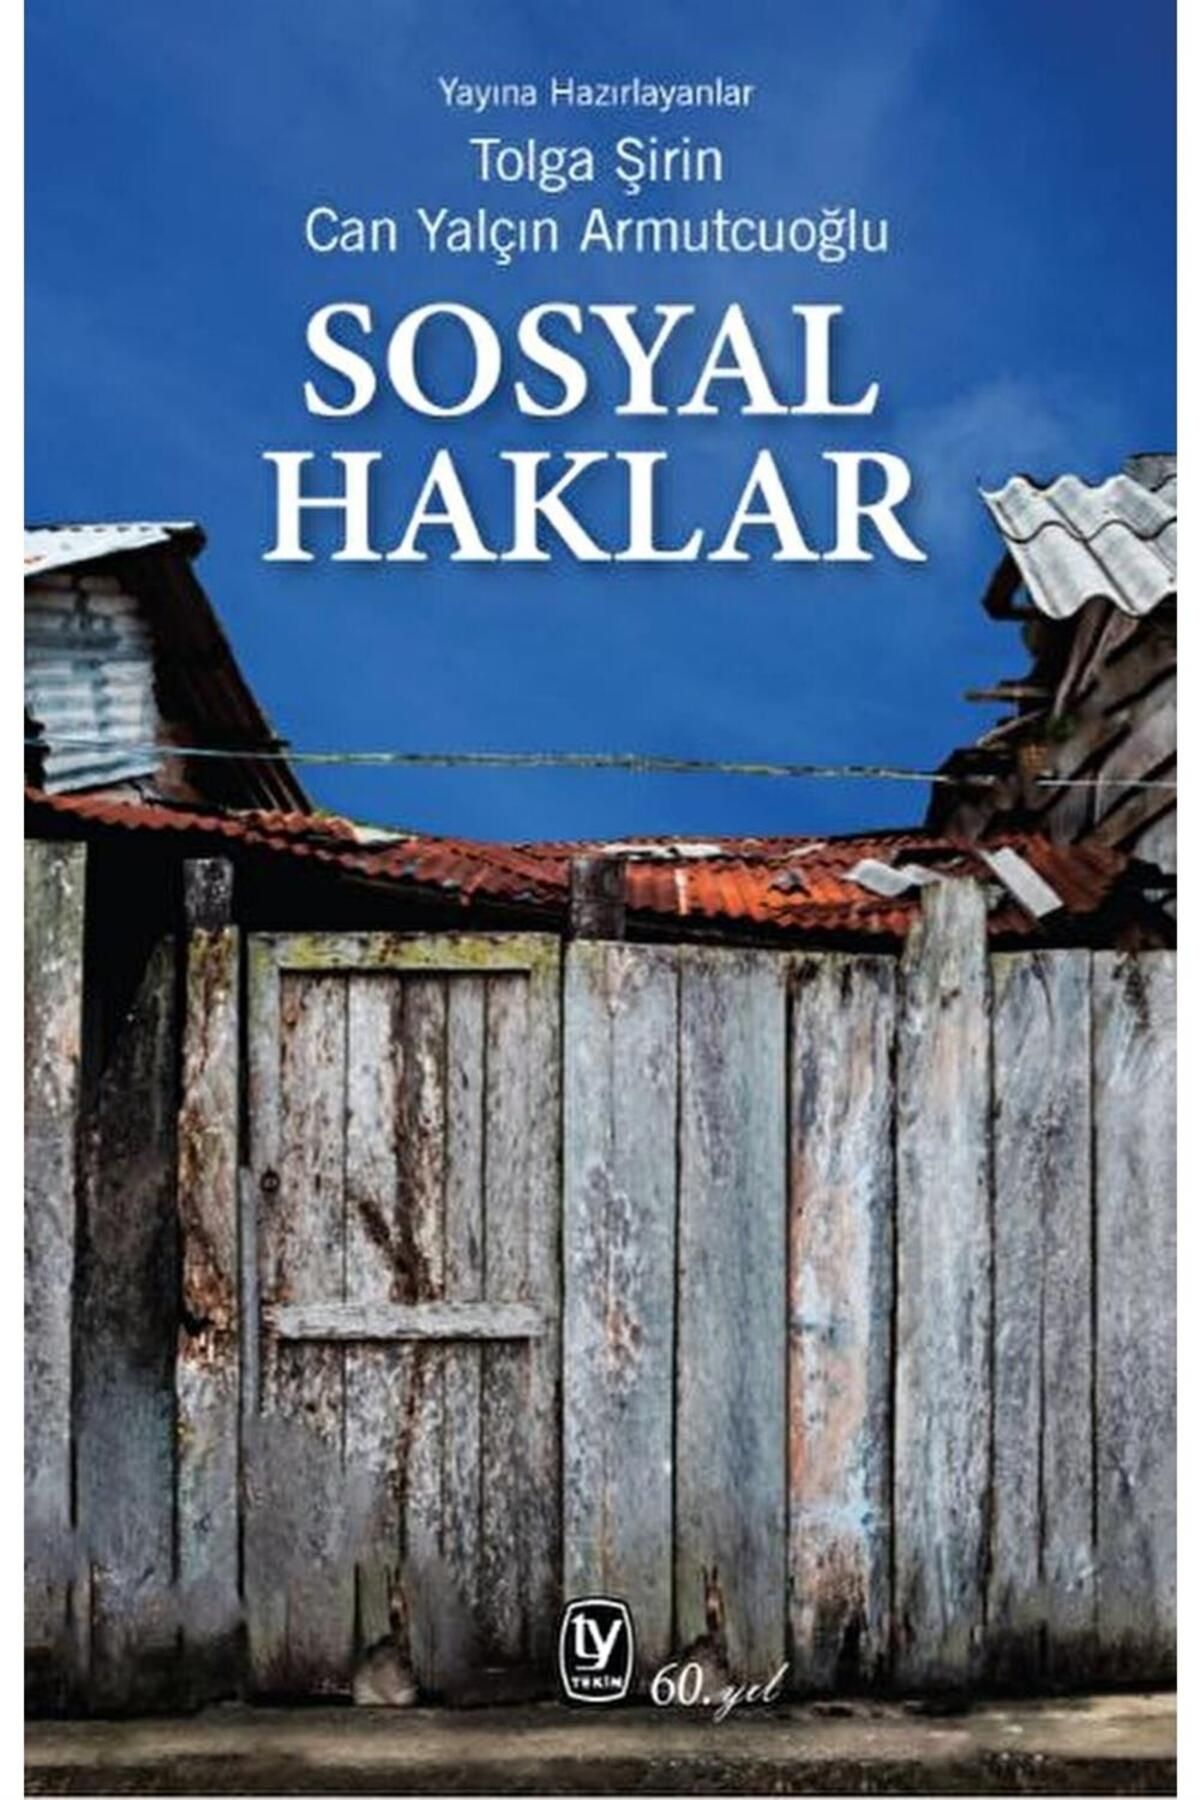 Genel Markalar Sosyal Haklar kitabı - Tolga Şirin & Can Yalçın Armutcuoğlu - Tekin Yayınevi